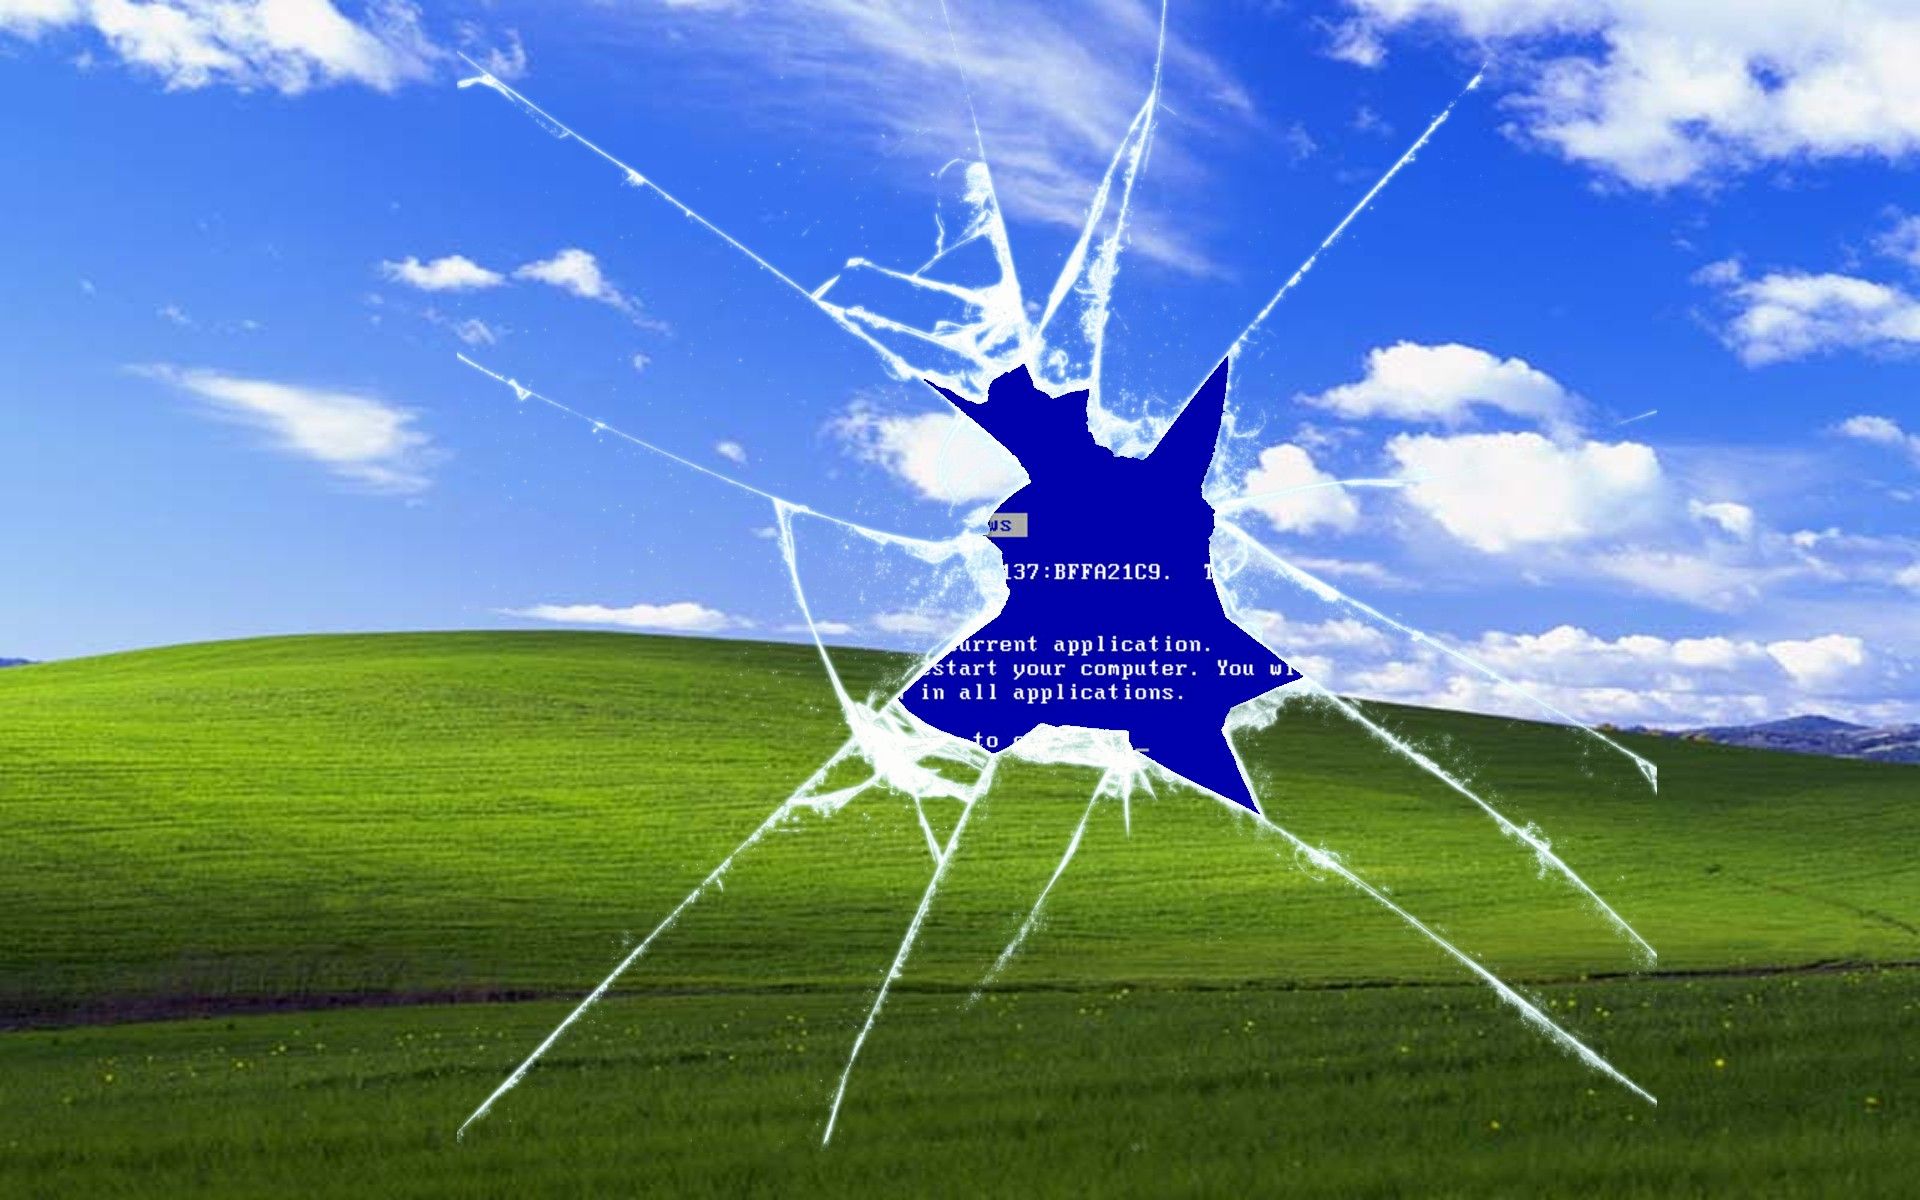 Windows XP is dead. Long live Windows XP Bliss Digital